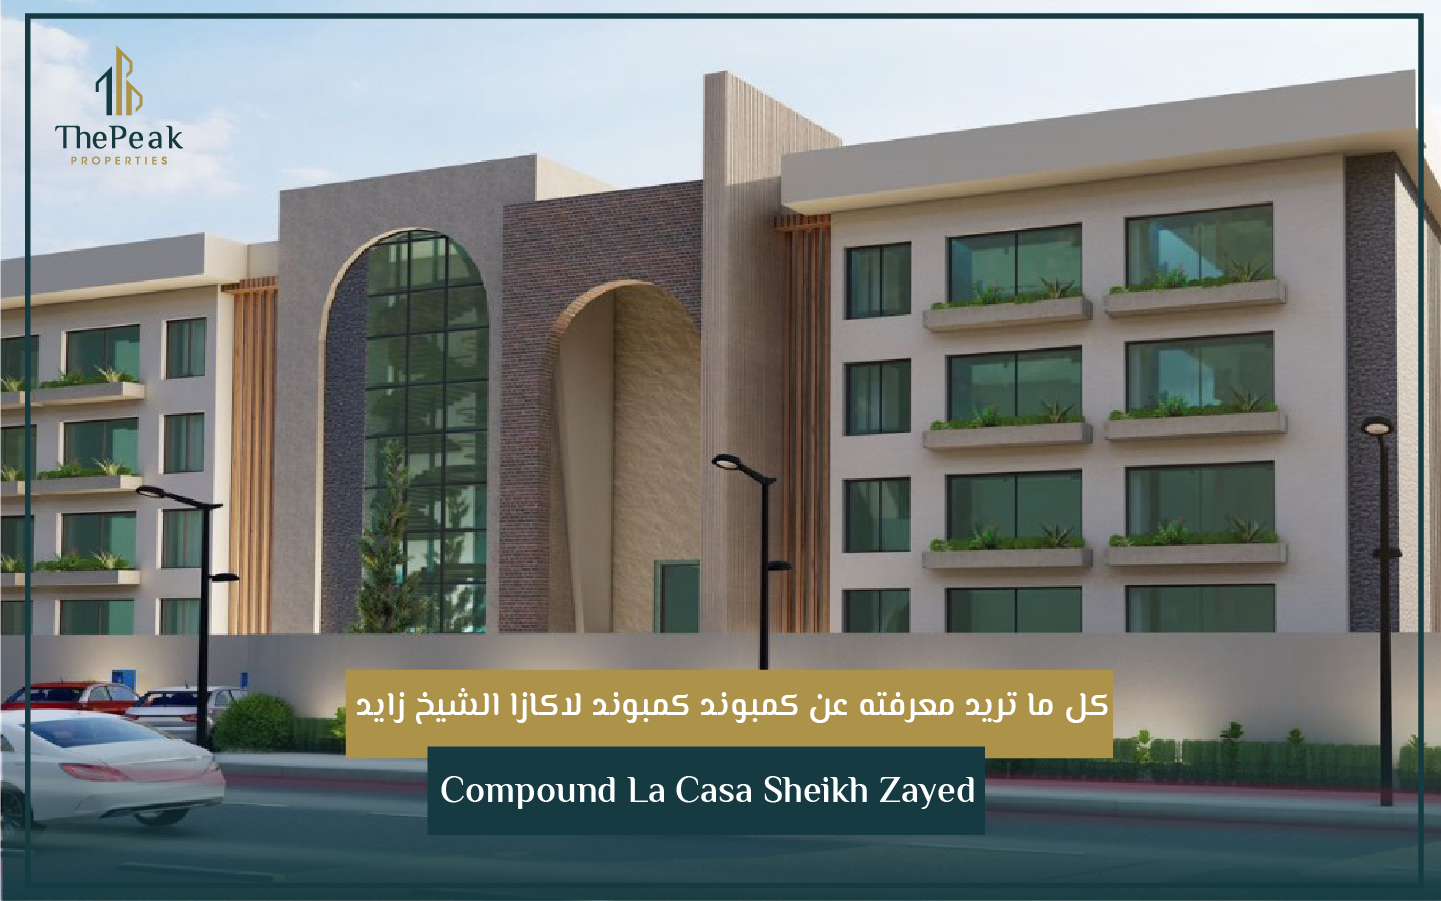 "شقة للبيع بالتقسيط بالشيخ زايد   مساحة 224 م + 105 م حديقة  مقدم 15 % و تقسيط علي 5 سنوات  في كمبوند Lacasa compound El Sheikh Zayed" | THE PEAK PROPERTIES